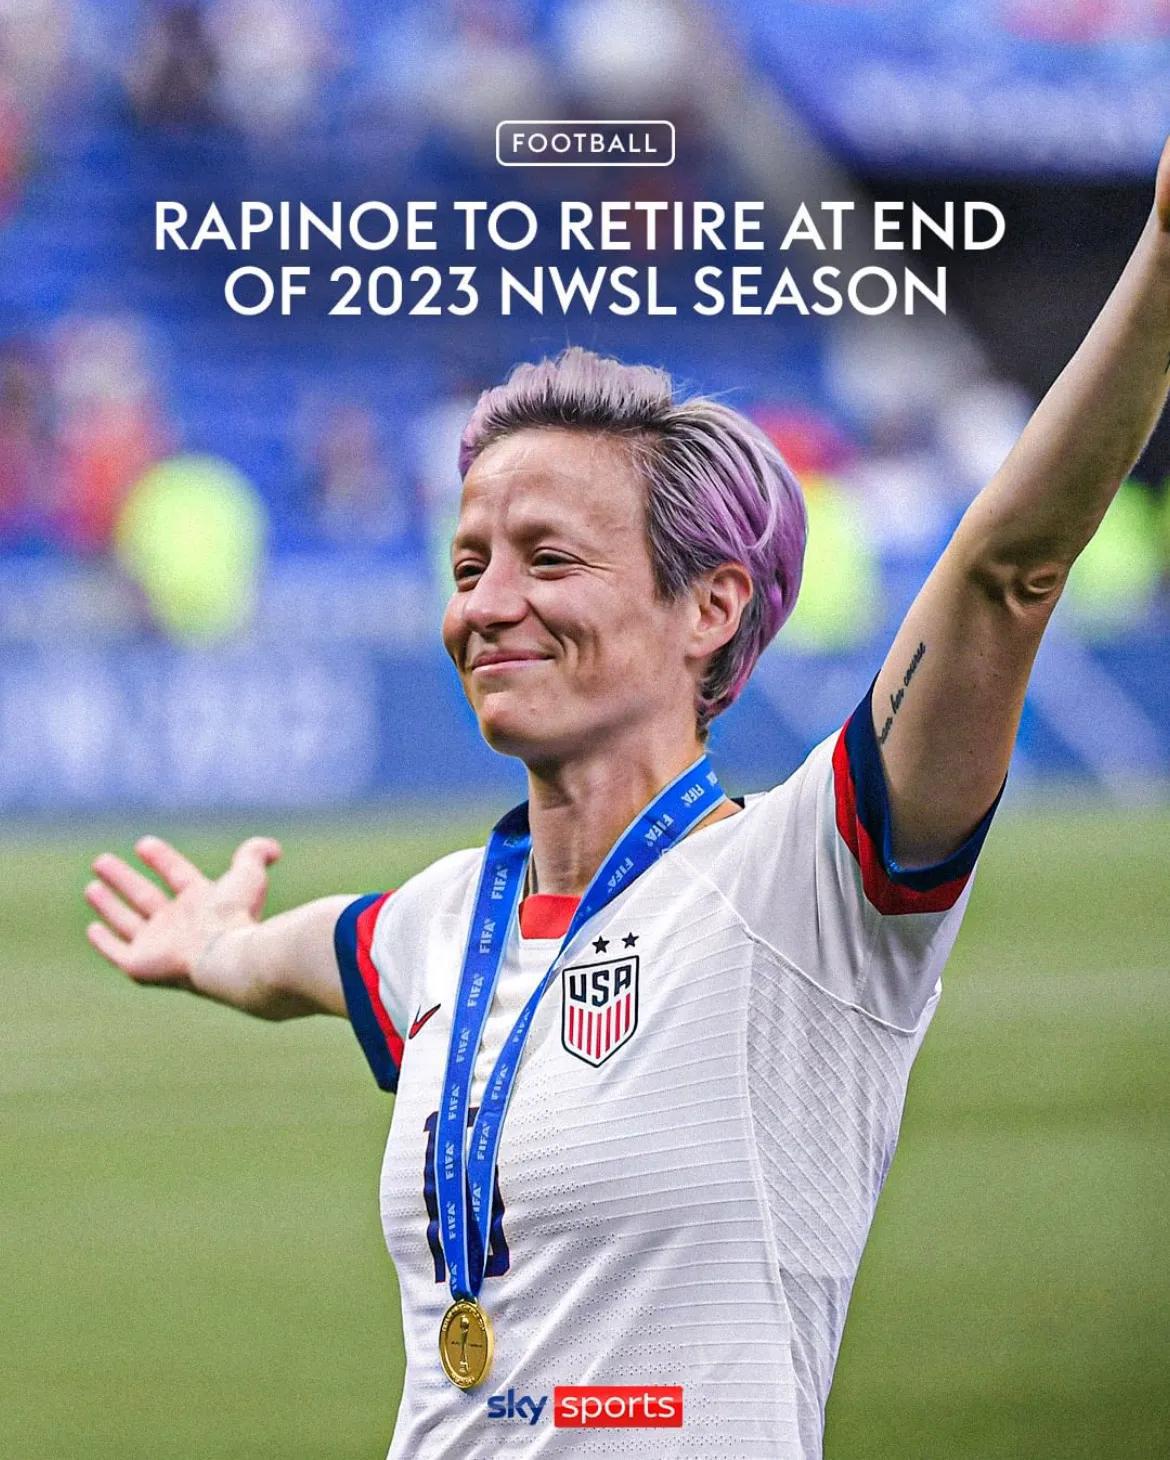 美国女足队长拉皮诺埃宣布，将于本赛季结束后正式退役。

拉皮诺埃帮助美国女足2次(1)